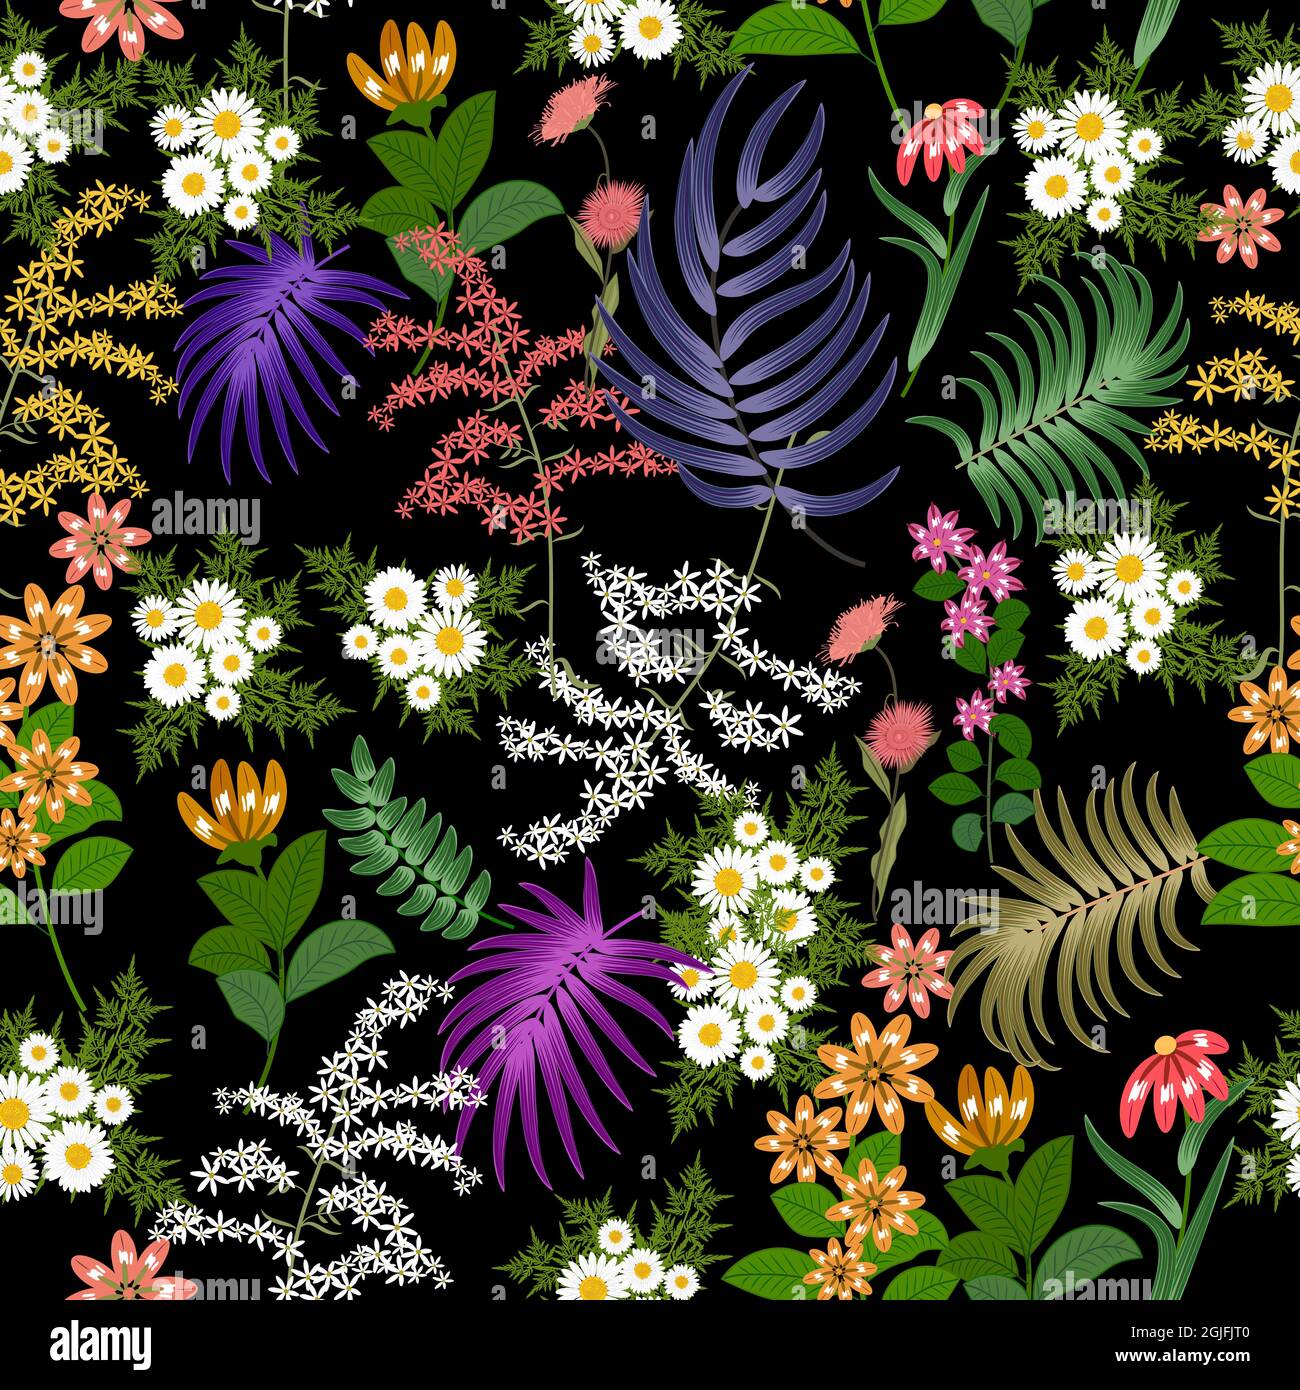 Motivi senza giunture con fiori luminosi e foglie tropicali di palma su sfondo nero. Sfondo vettoriale botanica, carta da parati giungla. Illustrazione Vettoriale